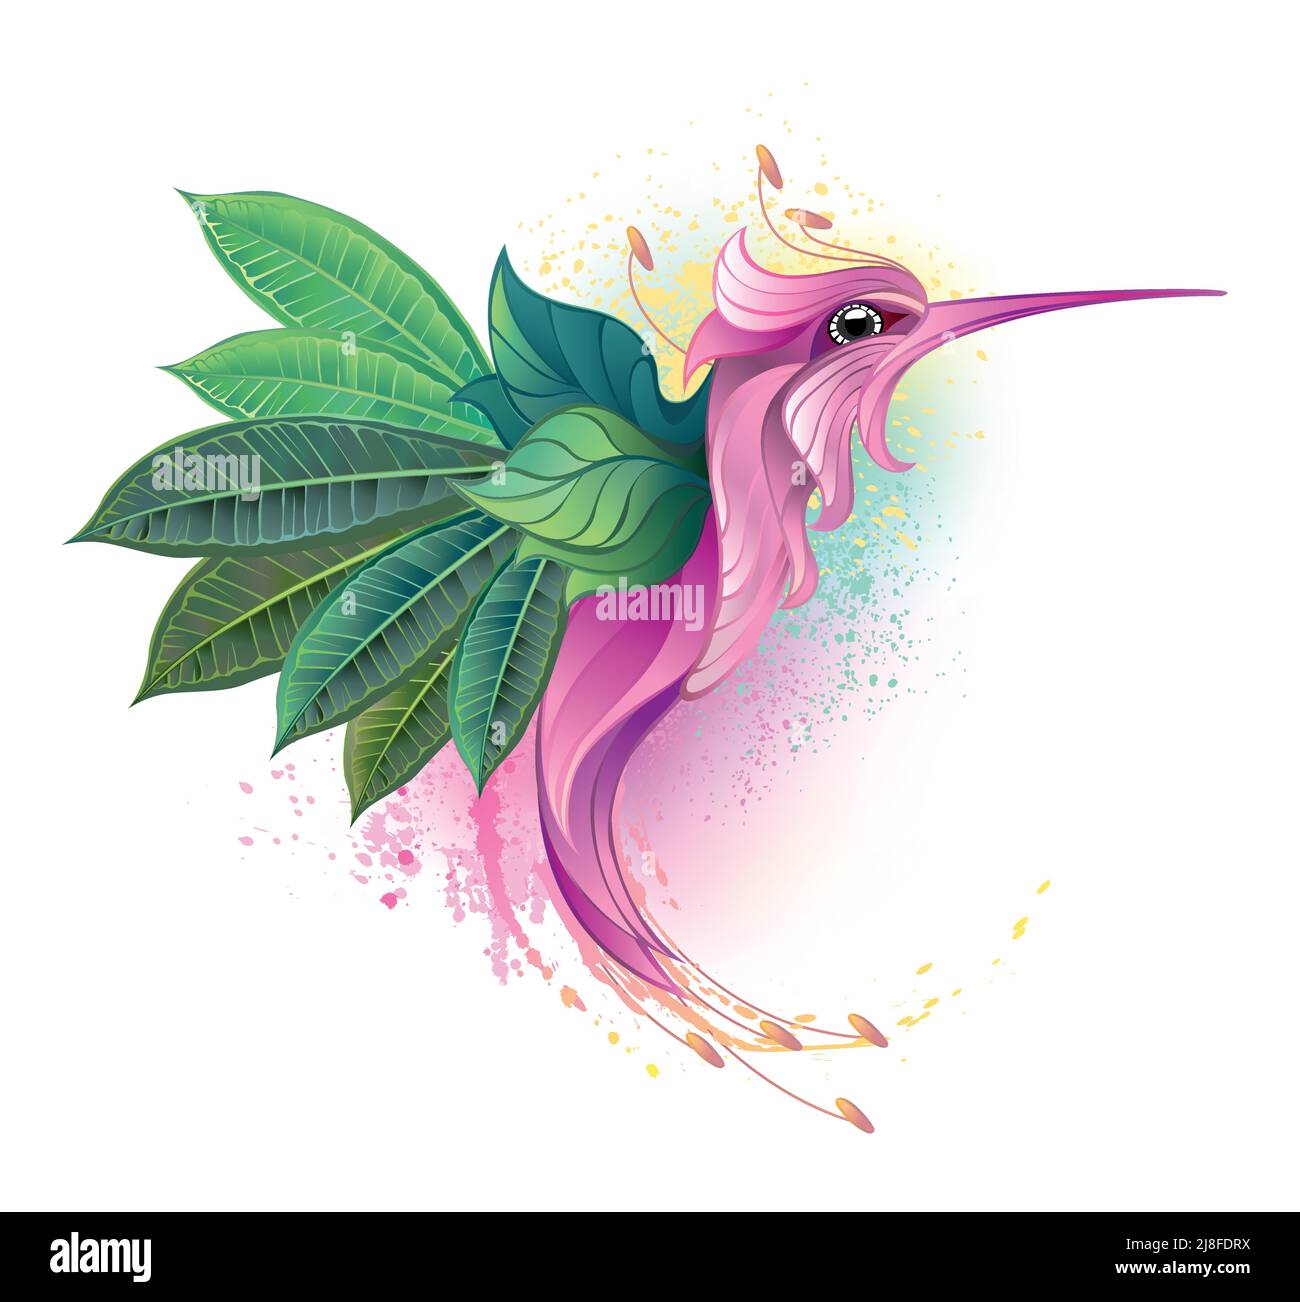 Hummingbird immaginario, disegnato artisticamente, fatto di fiore rosa e con ali fatte di verde, fogli dettagliati della plumeria. Illustrazione Vettoriale